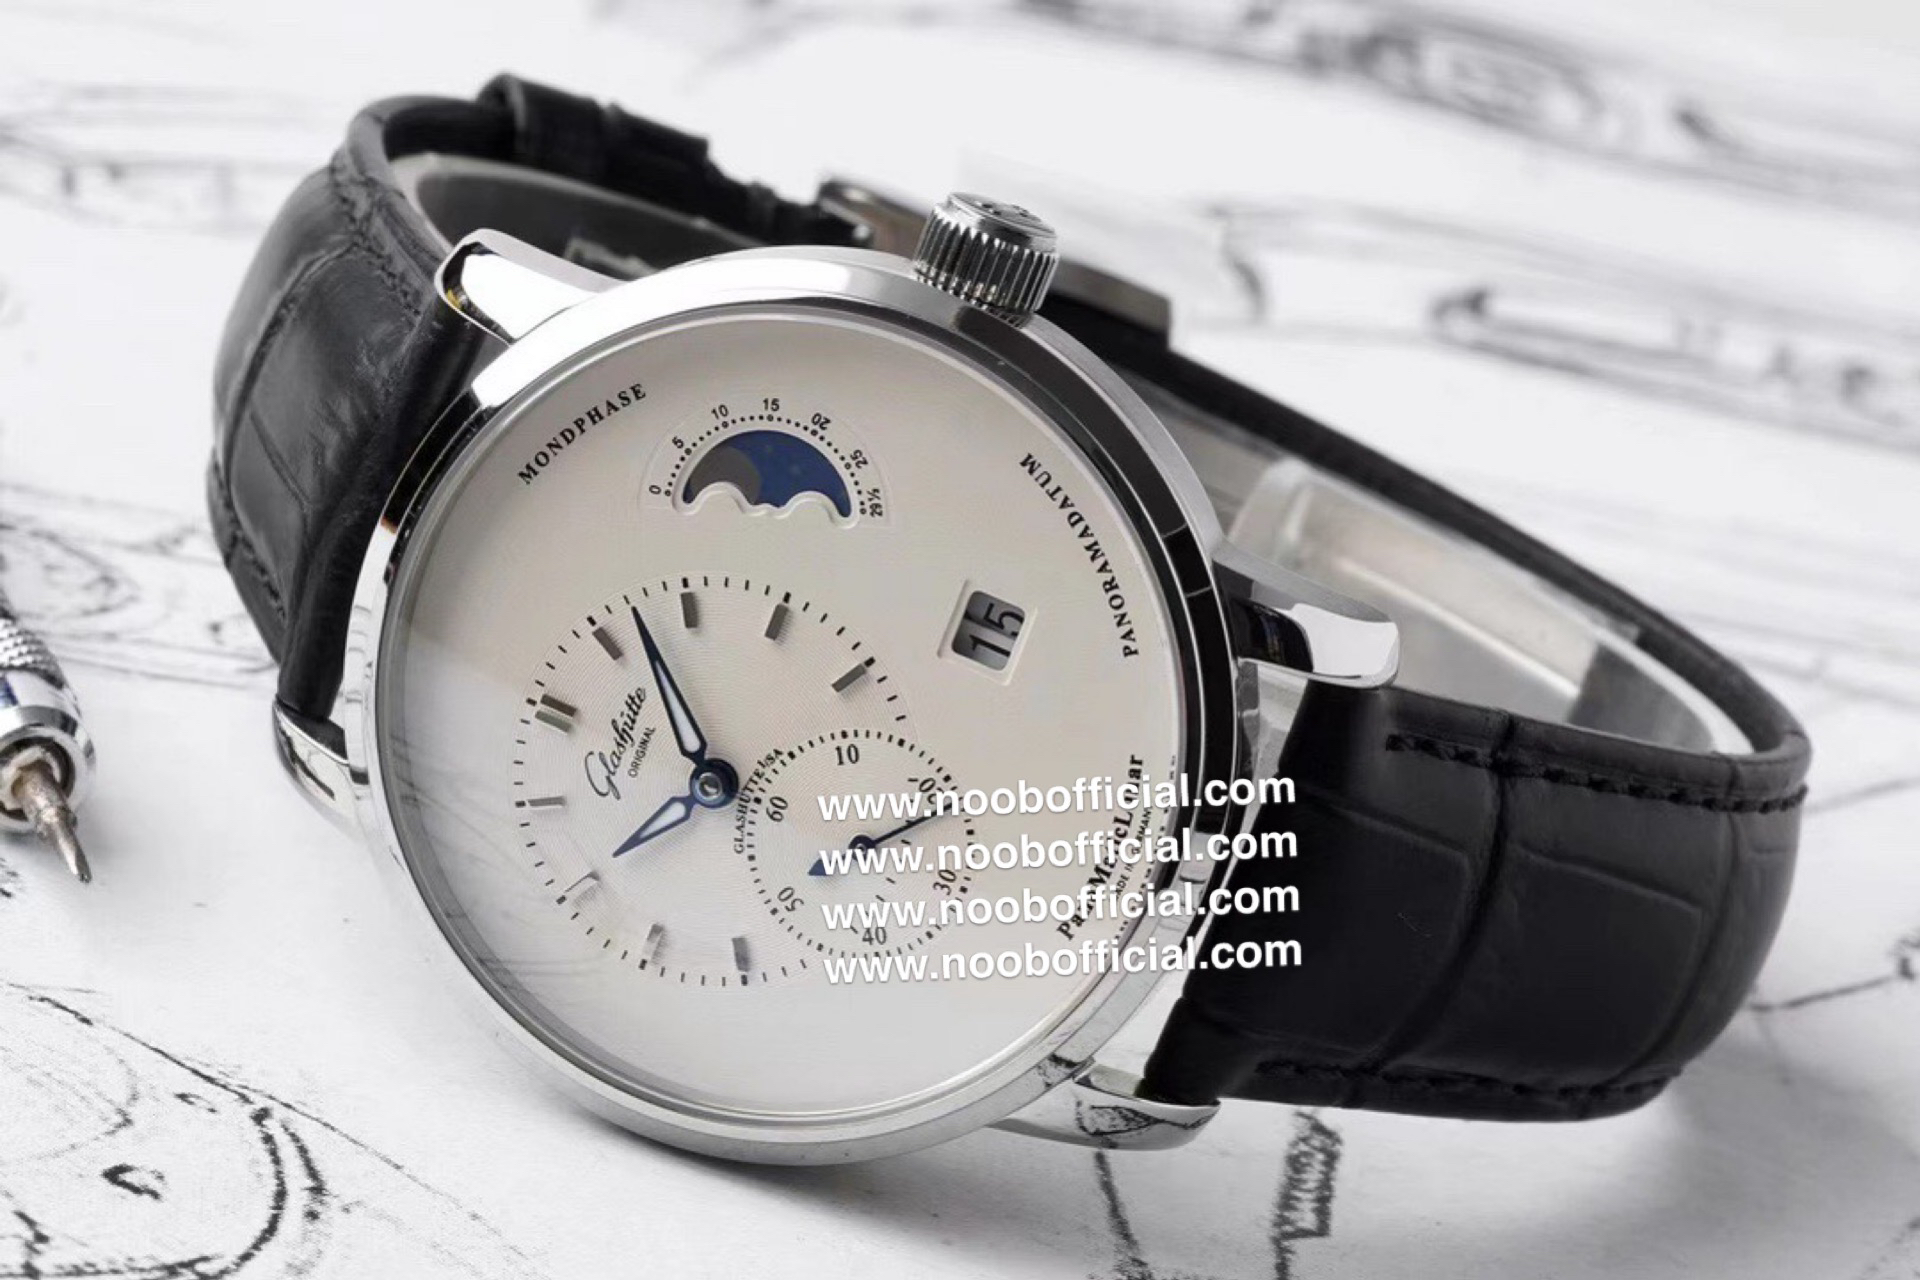 NOOB工厂最有“德味儿”的腕表———格拉苏蒂原创90偏心大日历月相，订制机芯的双跳大日历显示，日期显示的个位和十位并不在同一个日期圈上，有两个独立的显示盘，采用双模组设计